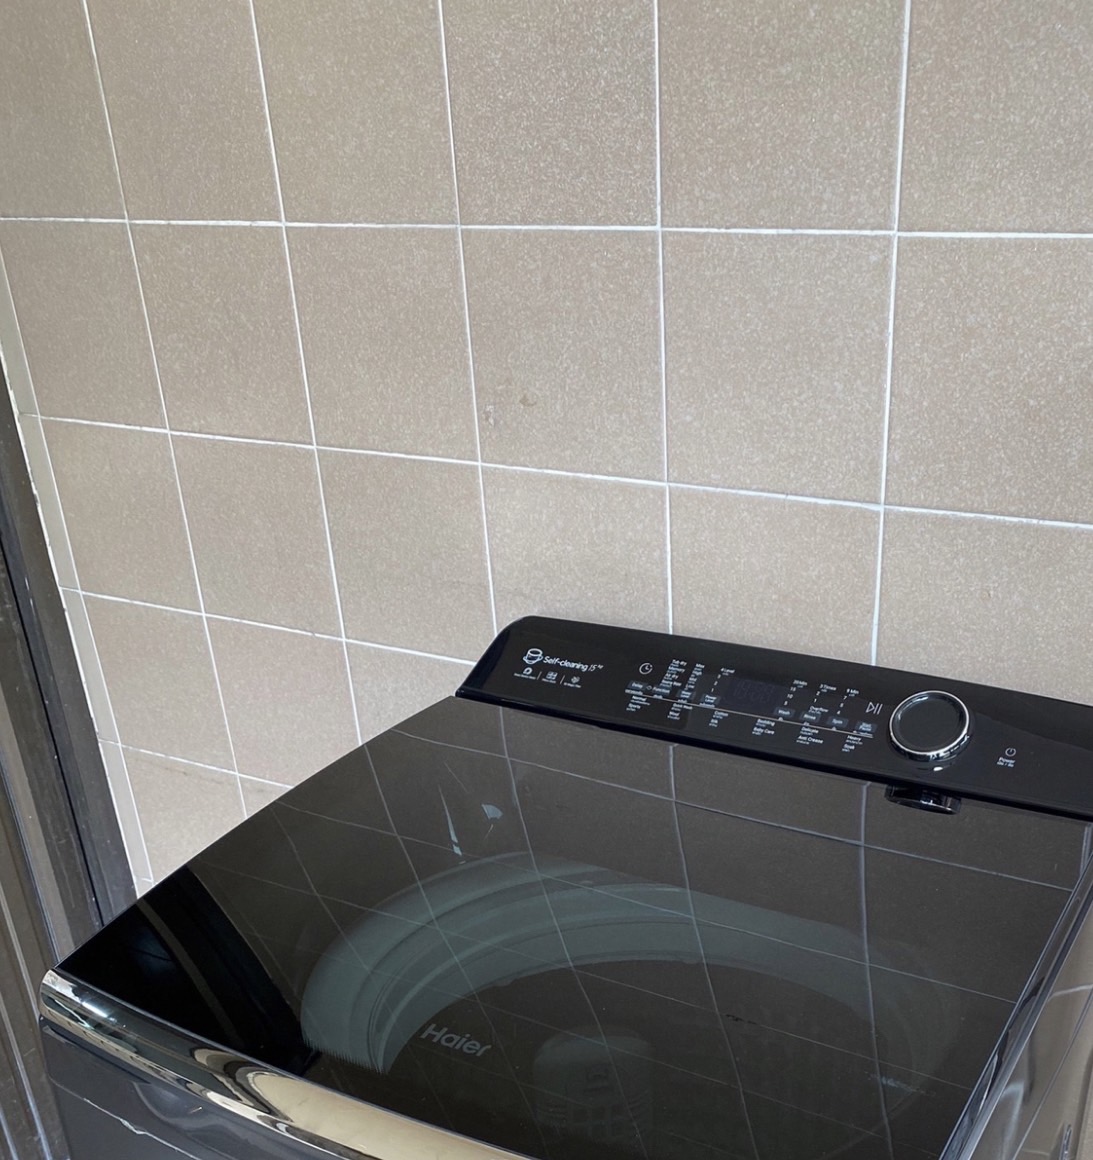 รีวิวแกะกล่อง เครื่องซักผ้าฝาบน Haier Self-Cleaning Series ล้างถังซัก ทุกครั้งที่ซักผ้า รุ่น Hm150-B1978S8 - Pantip